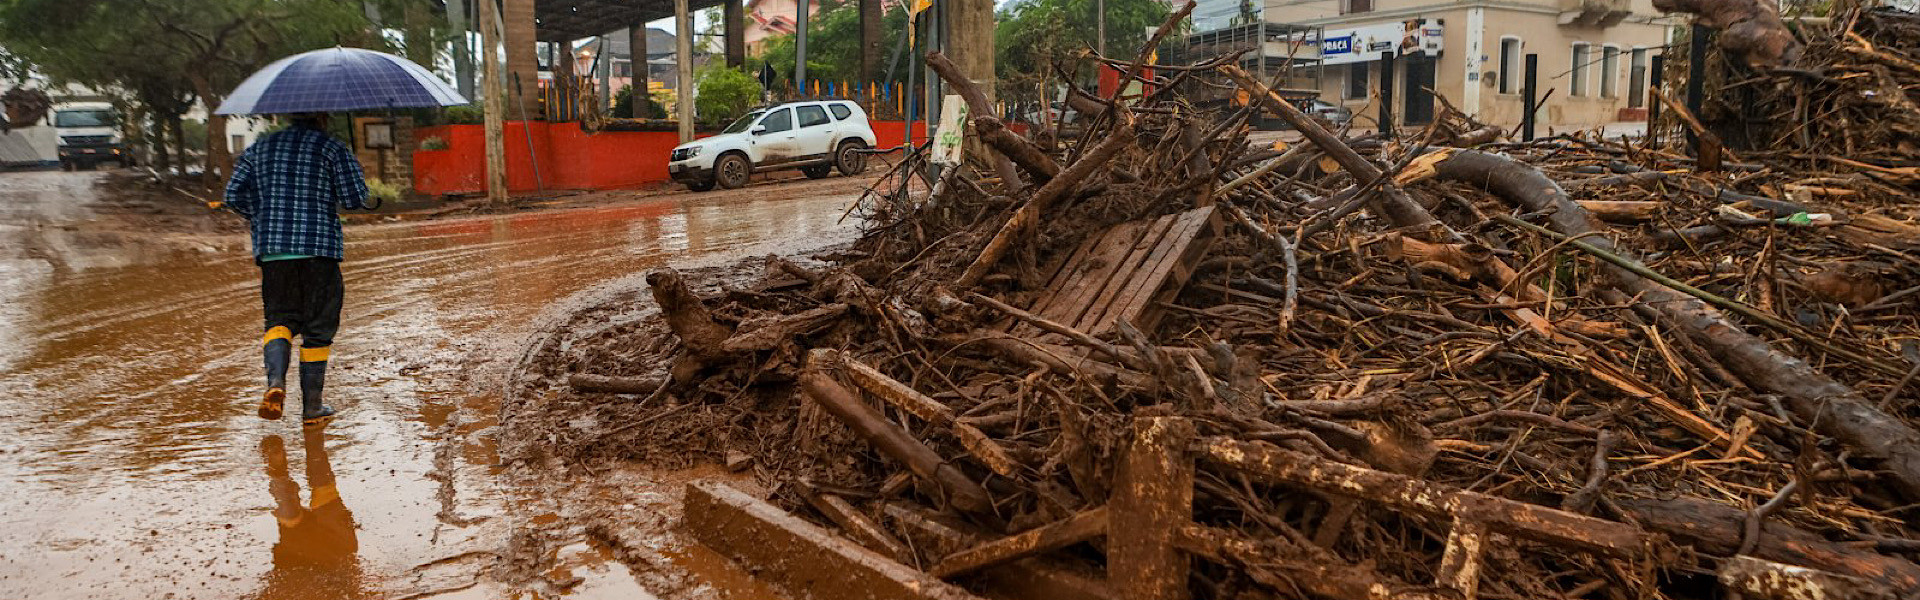 Desastres naturais: Brasil perdeu quase meio trilhão de reais nos últimos 11 anos